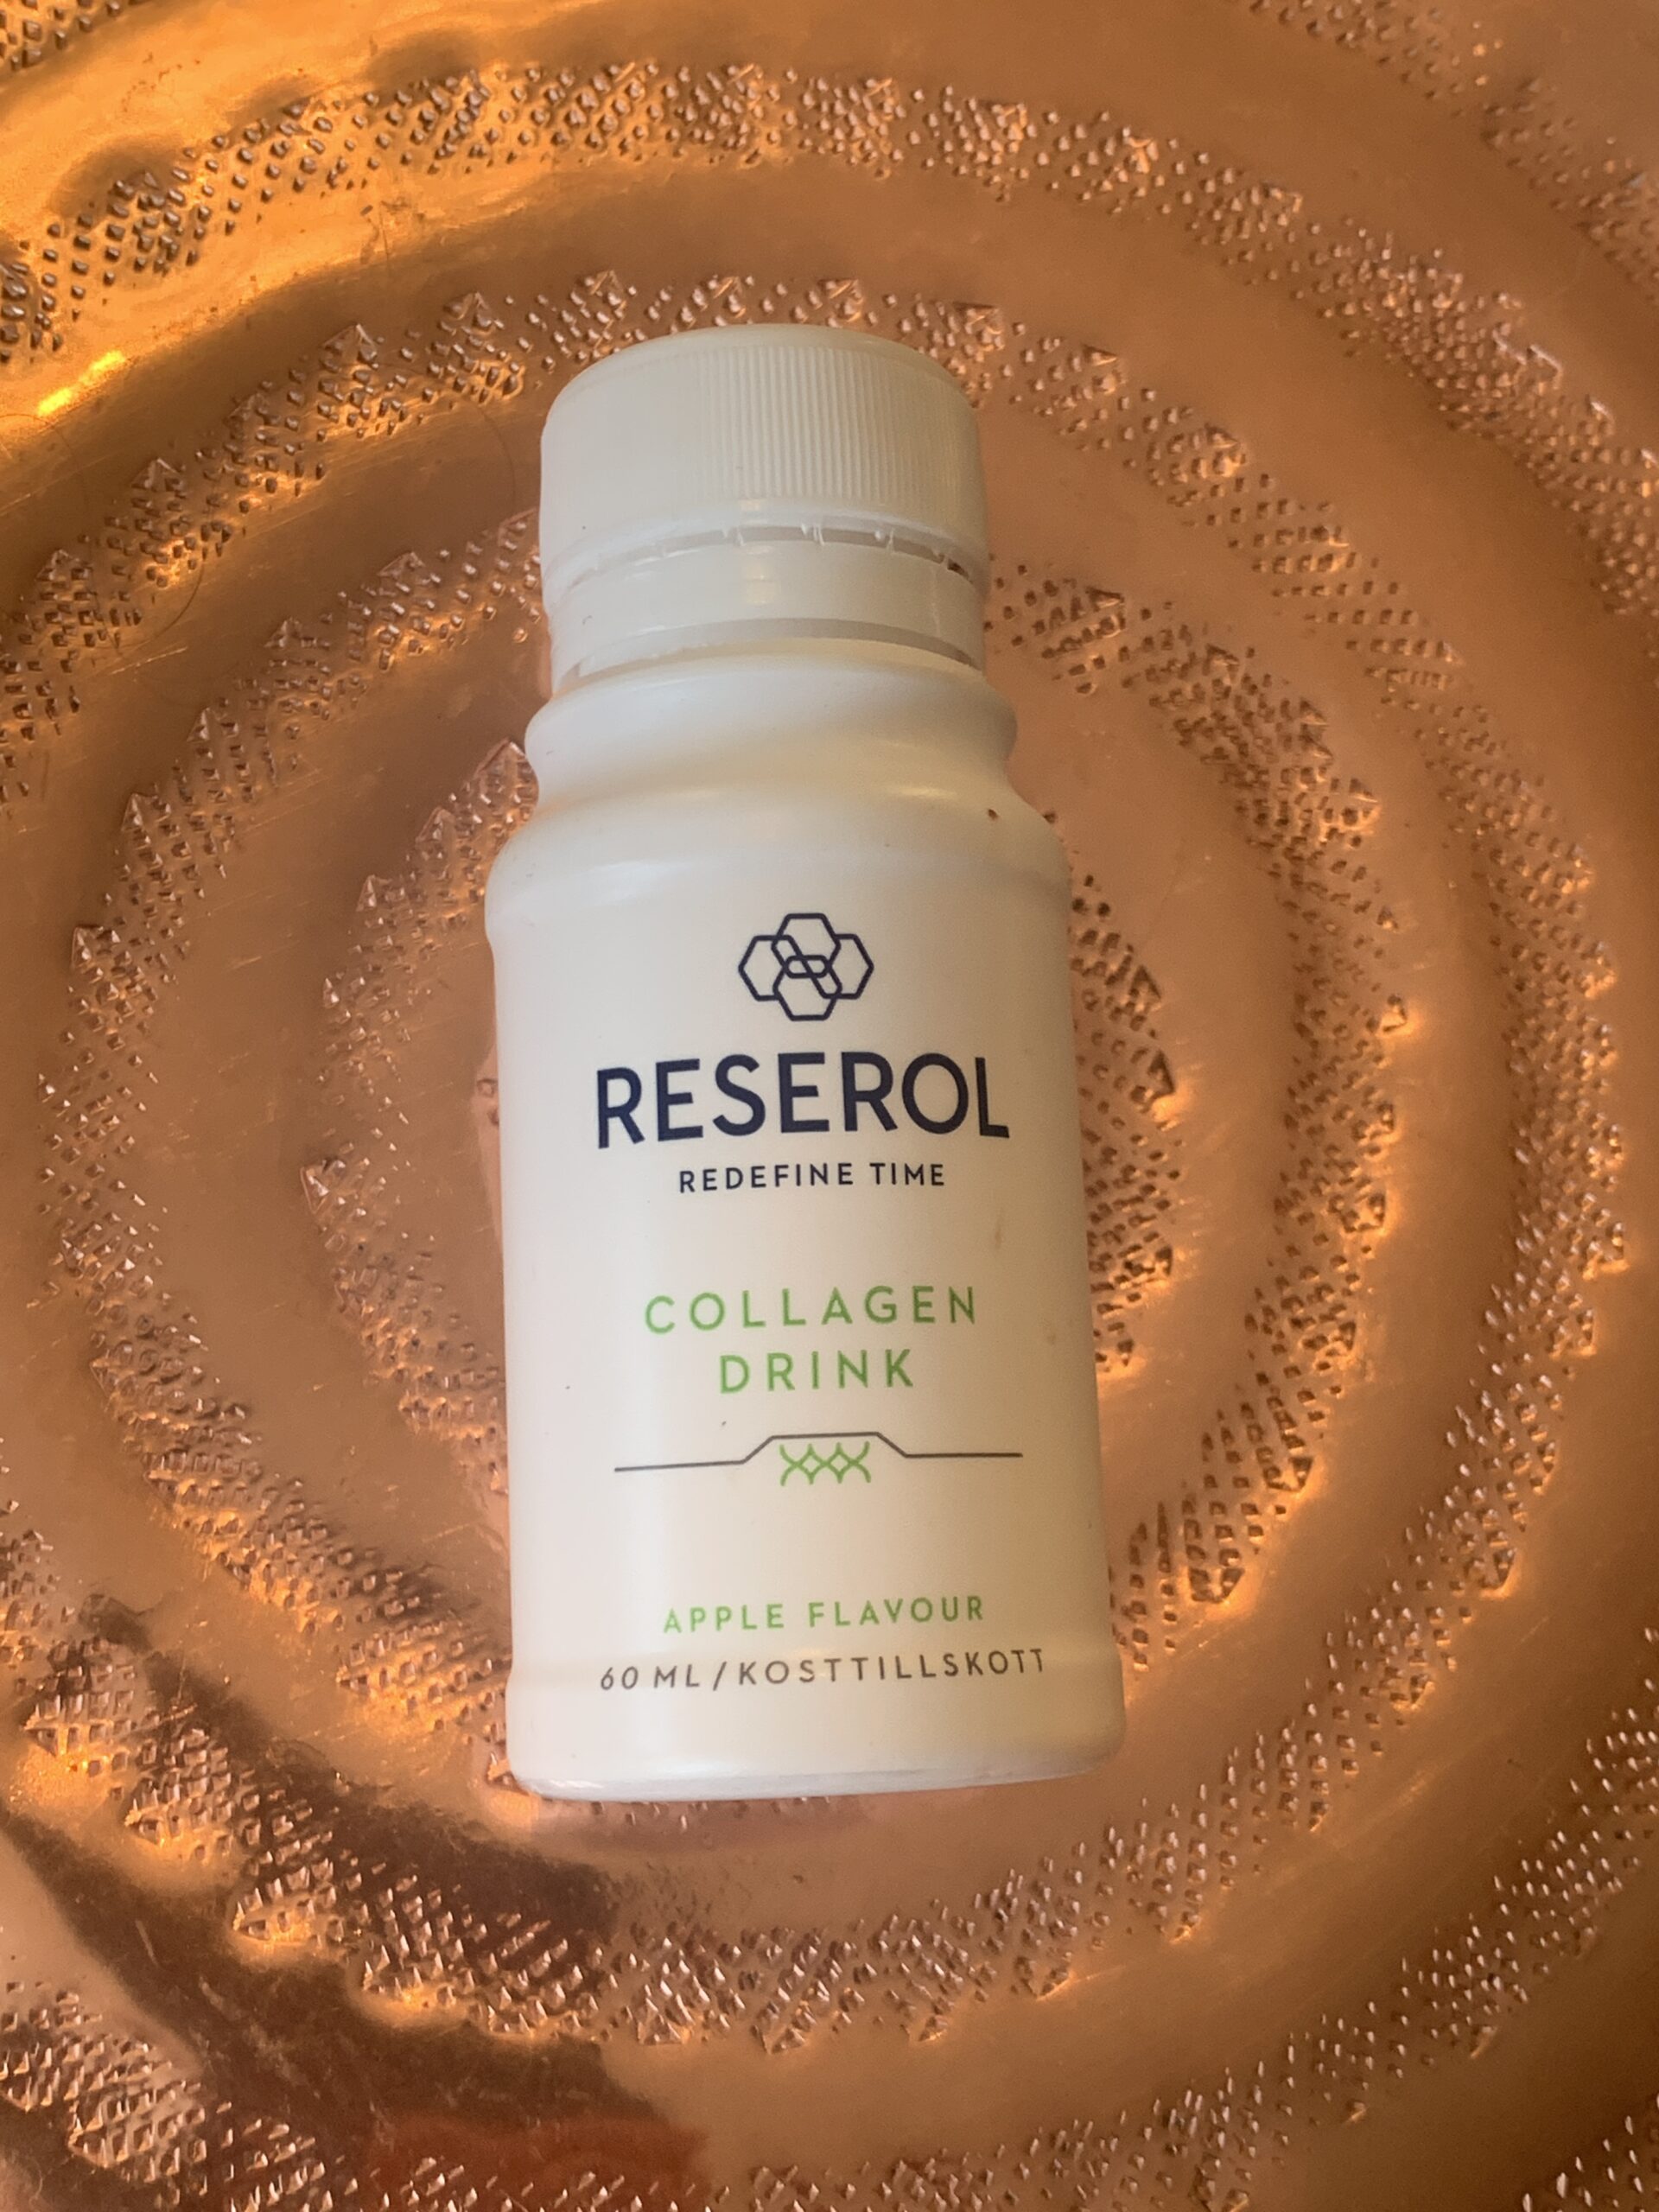 Reserol collagen drink